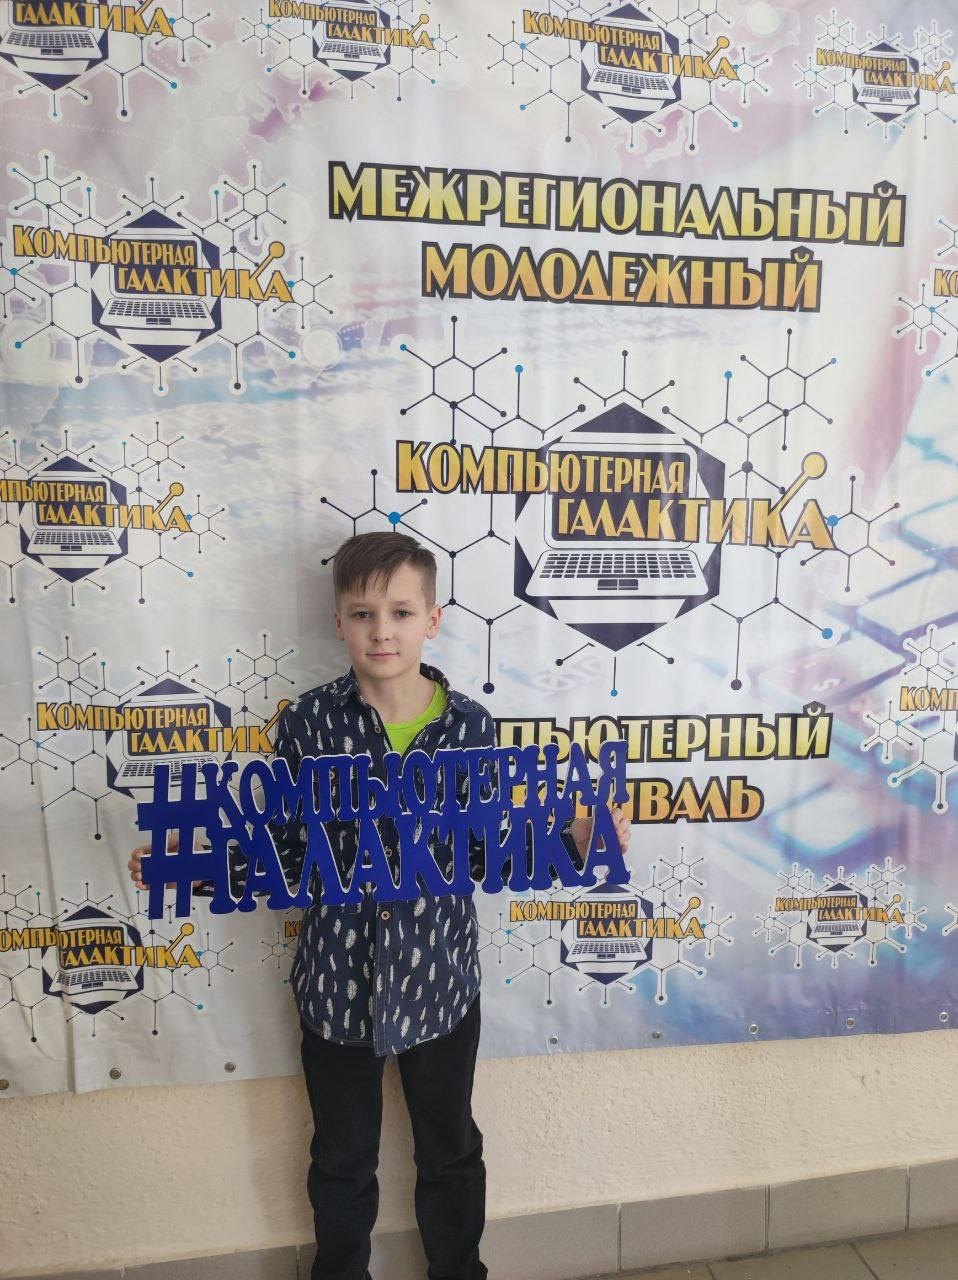 Межрегиональный компьютерный фестиваль прошёл в Горно-Алтайске.